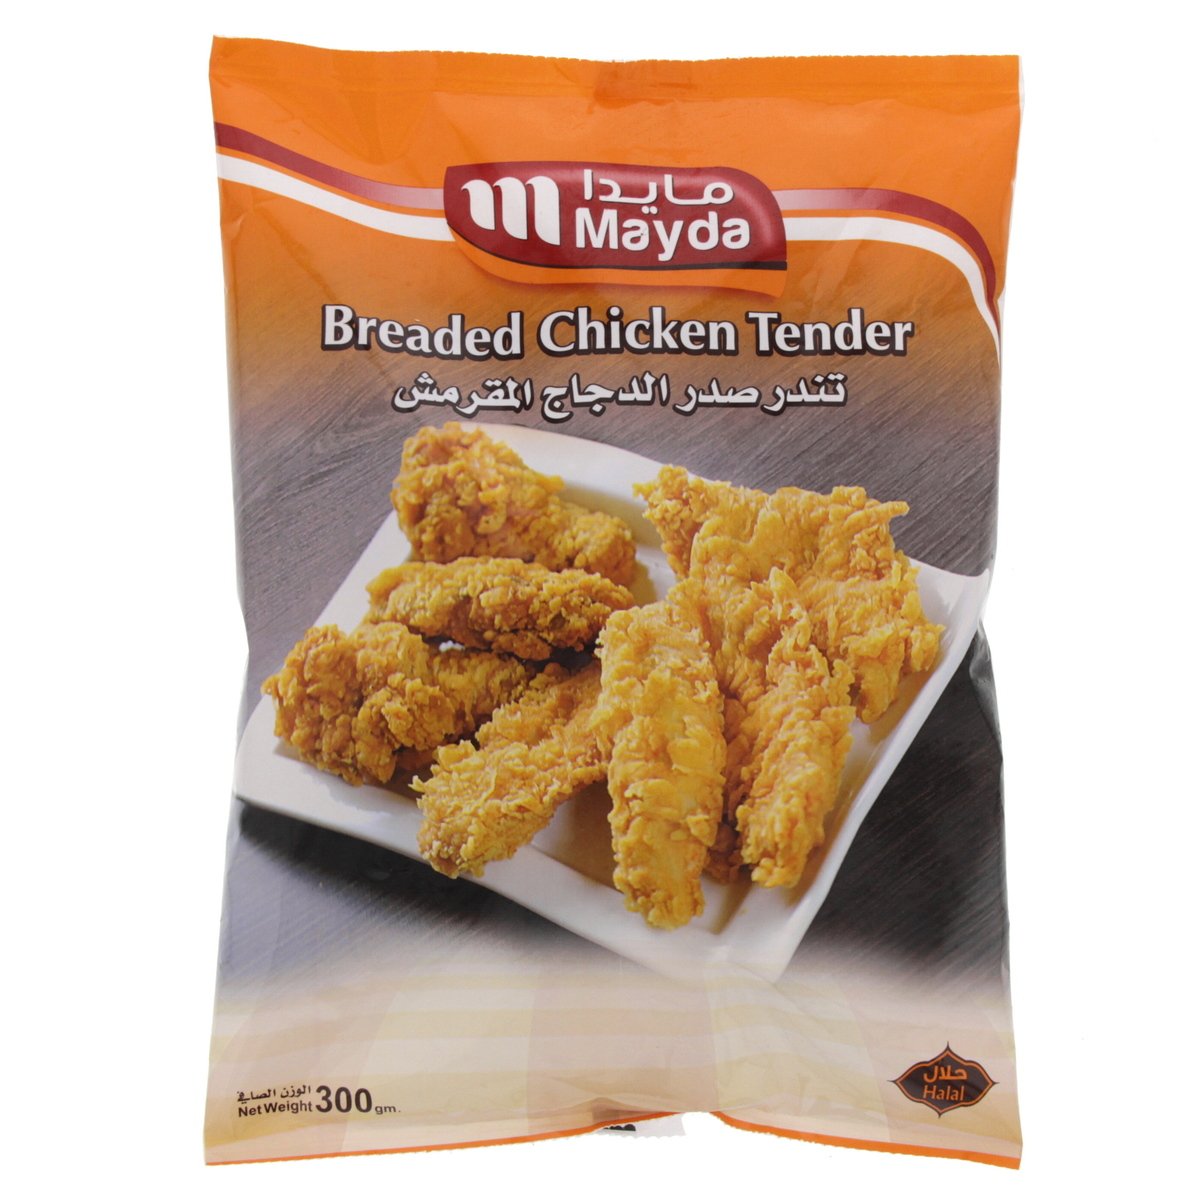 Mayda Breaded Chicken Tender 300 g